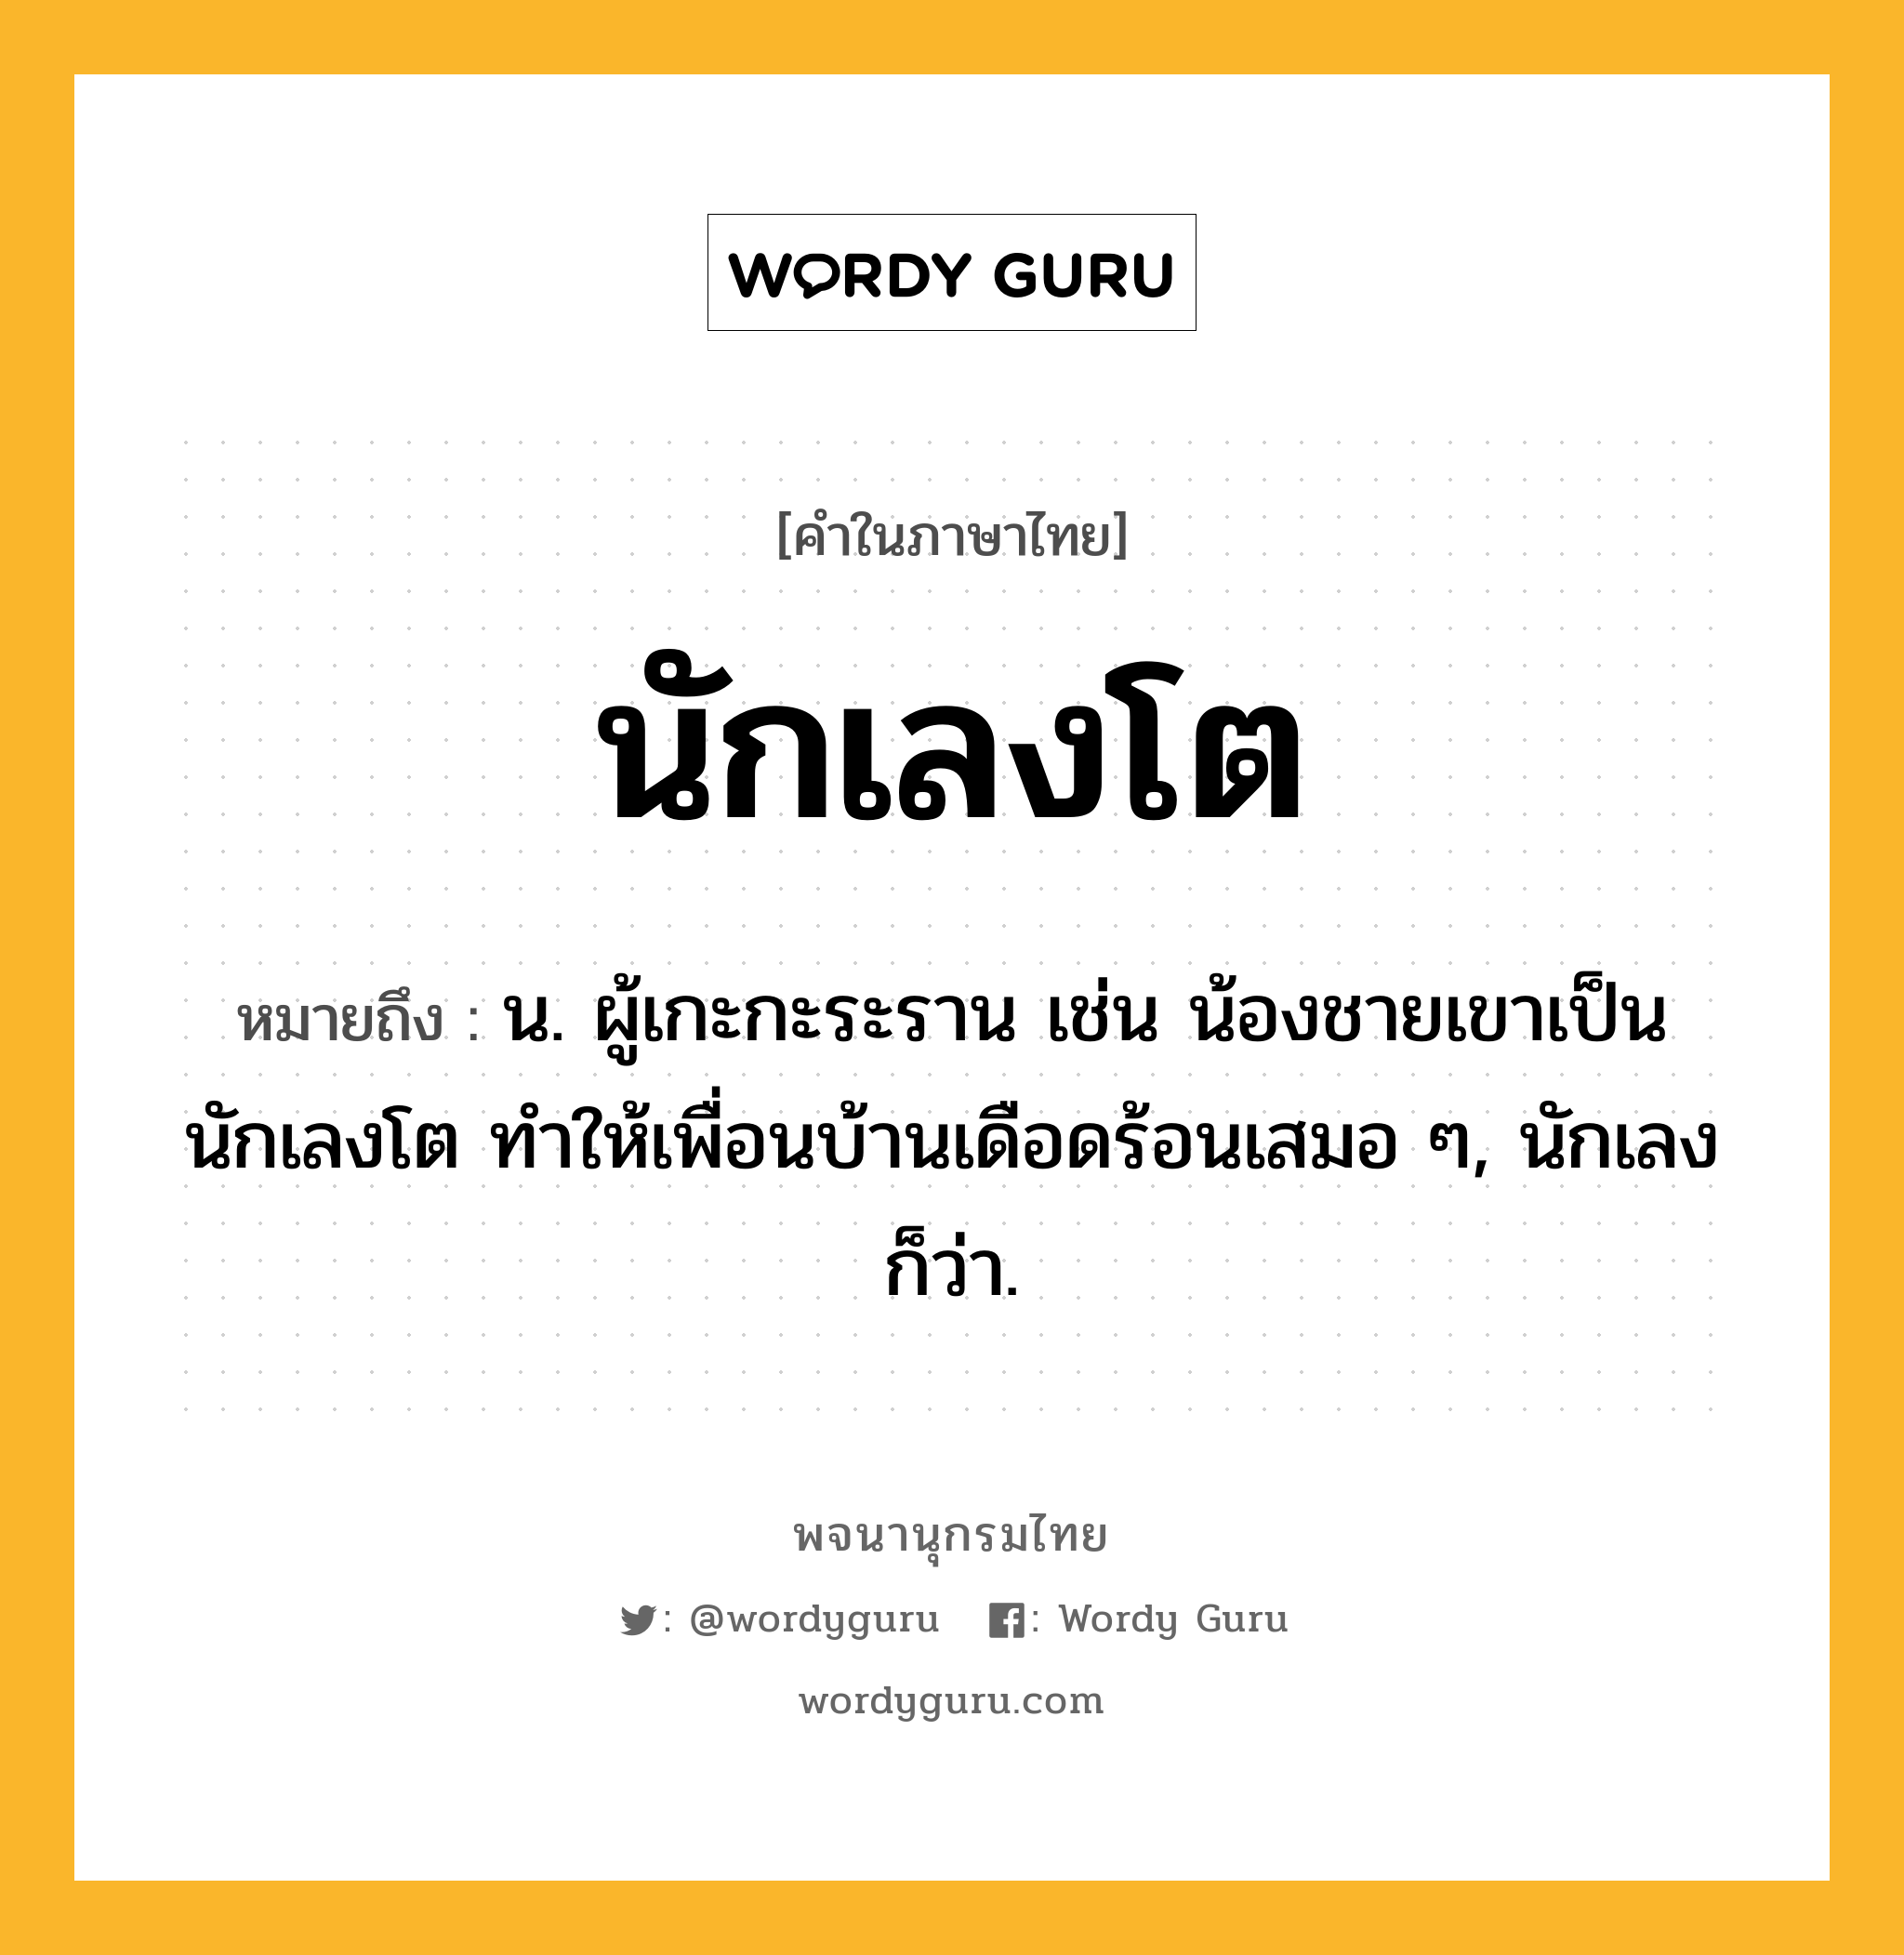 นักเลงโต ความหมาย หมายถึงอะไร?, คำในภาษาไทย นักเลงโต หมายถึง น. ผู้เกะกะระราน เช่น น้องชายเขาเป็นนักเลงโต ทำให้เพื่อนบ้านเดือดร้อนเสมอ ๆ, นักเลง ก็ว่า.